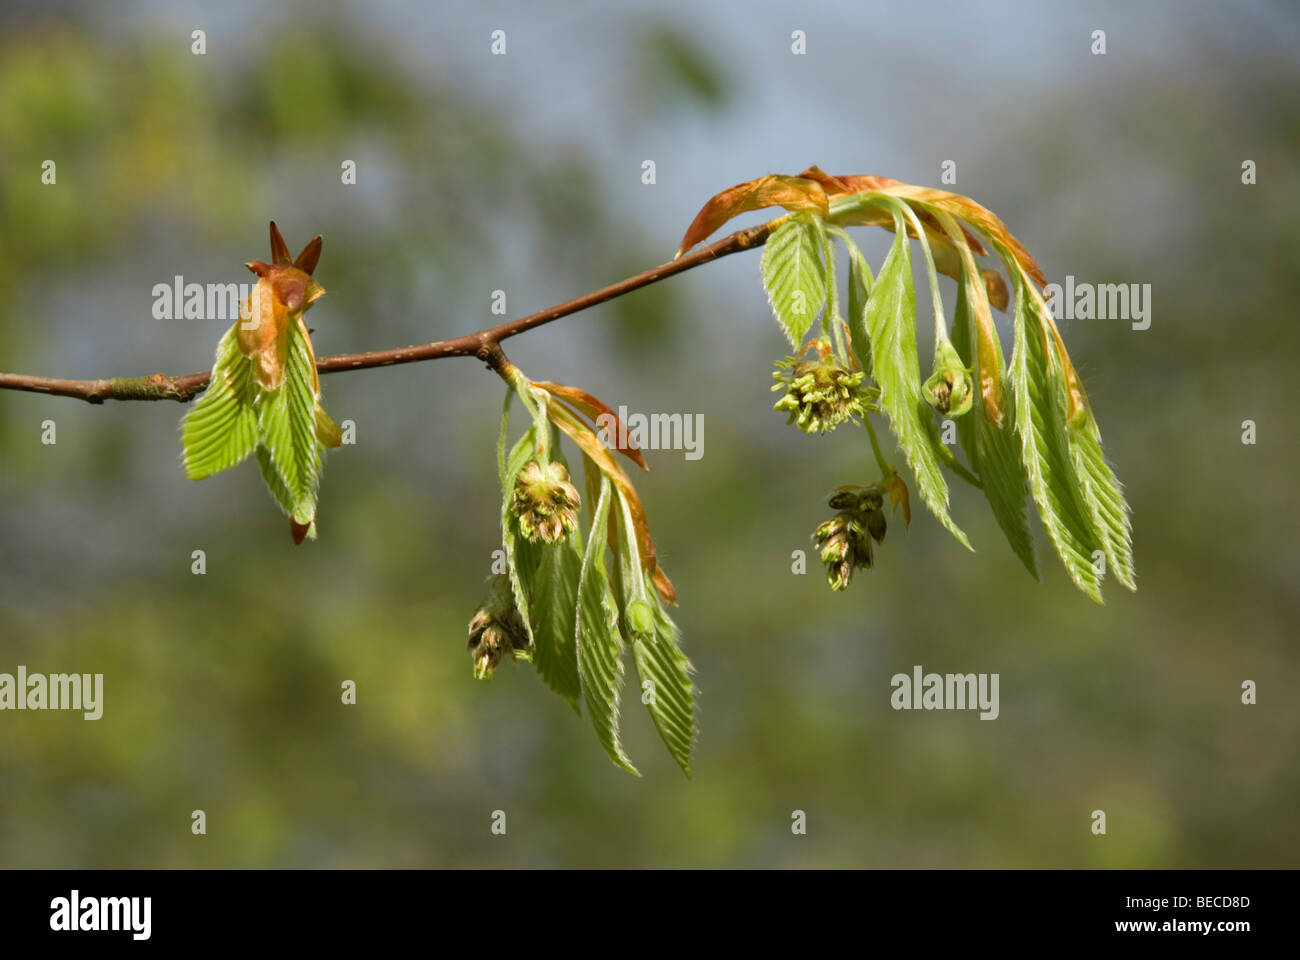 Fagus engleriana, Chinese beech tree Stock Photo